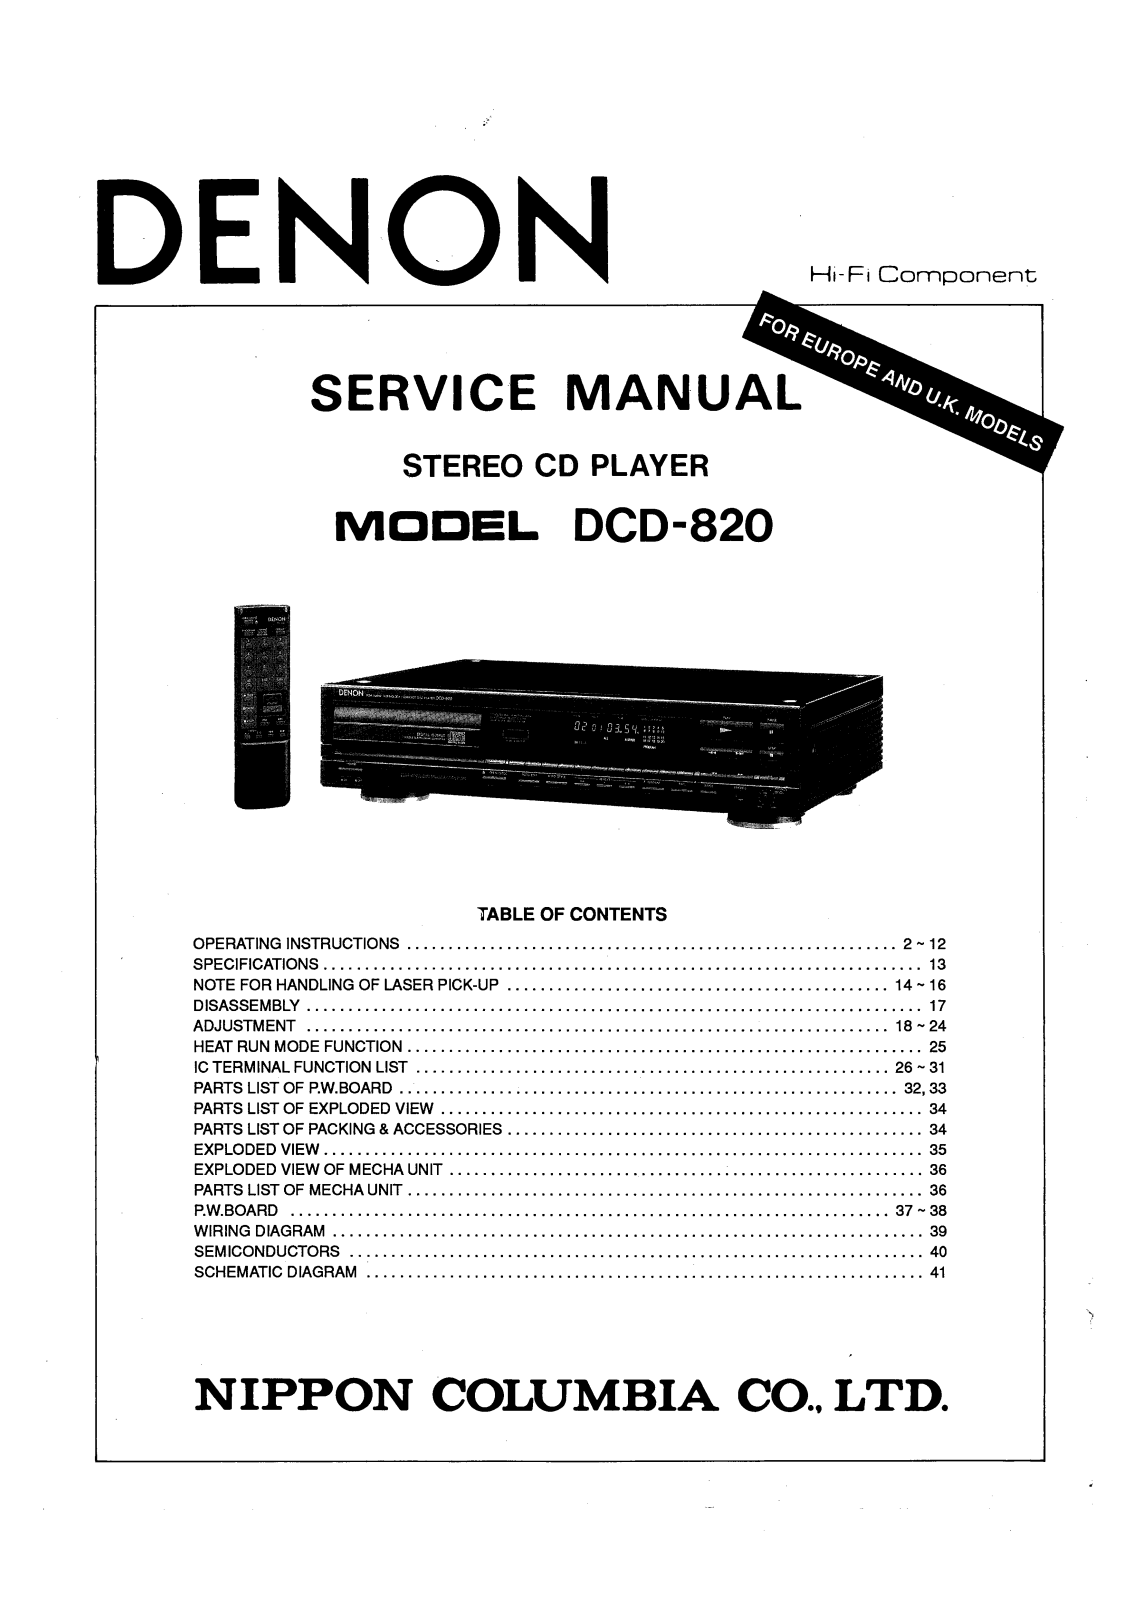 Denon DCD-820 Service Manual